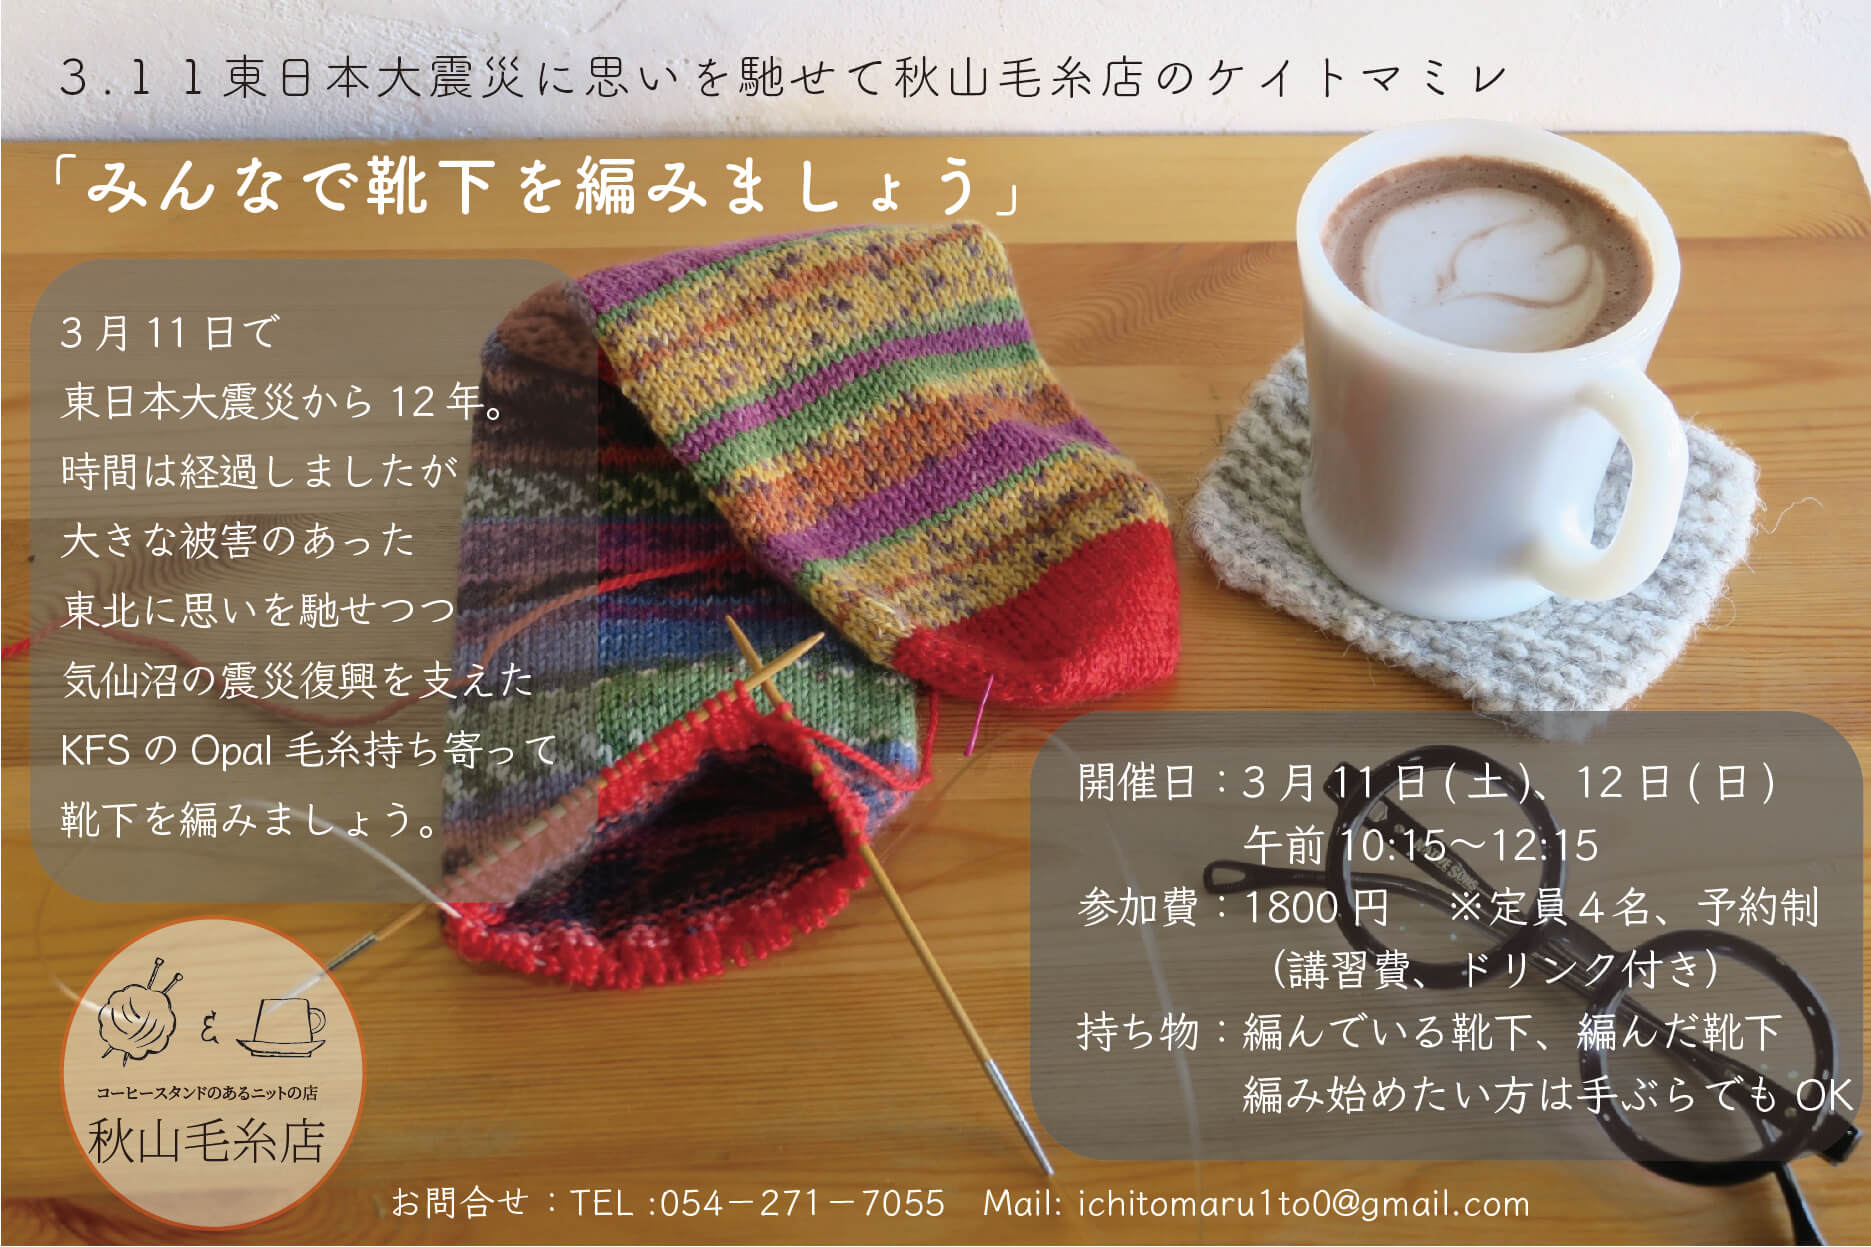 【イベント終了】秋山毛糸店ケイトマミレ「みんなで靴下を編みましょう」